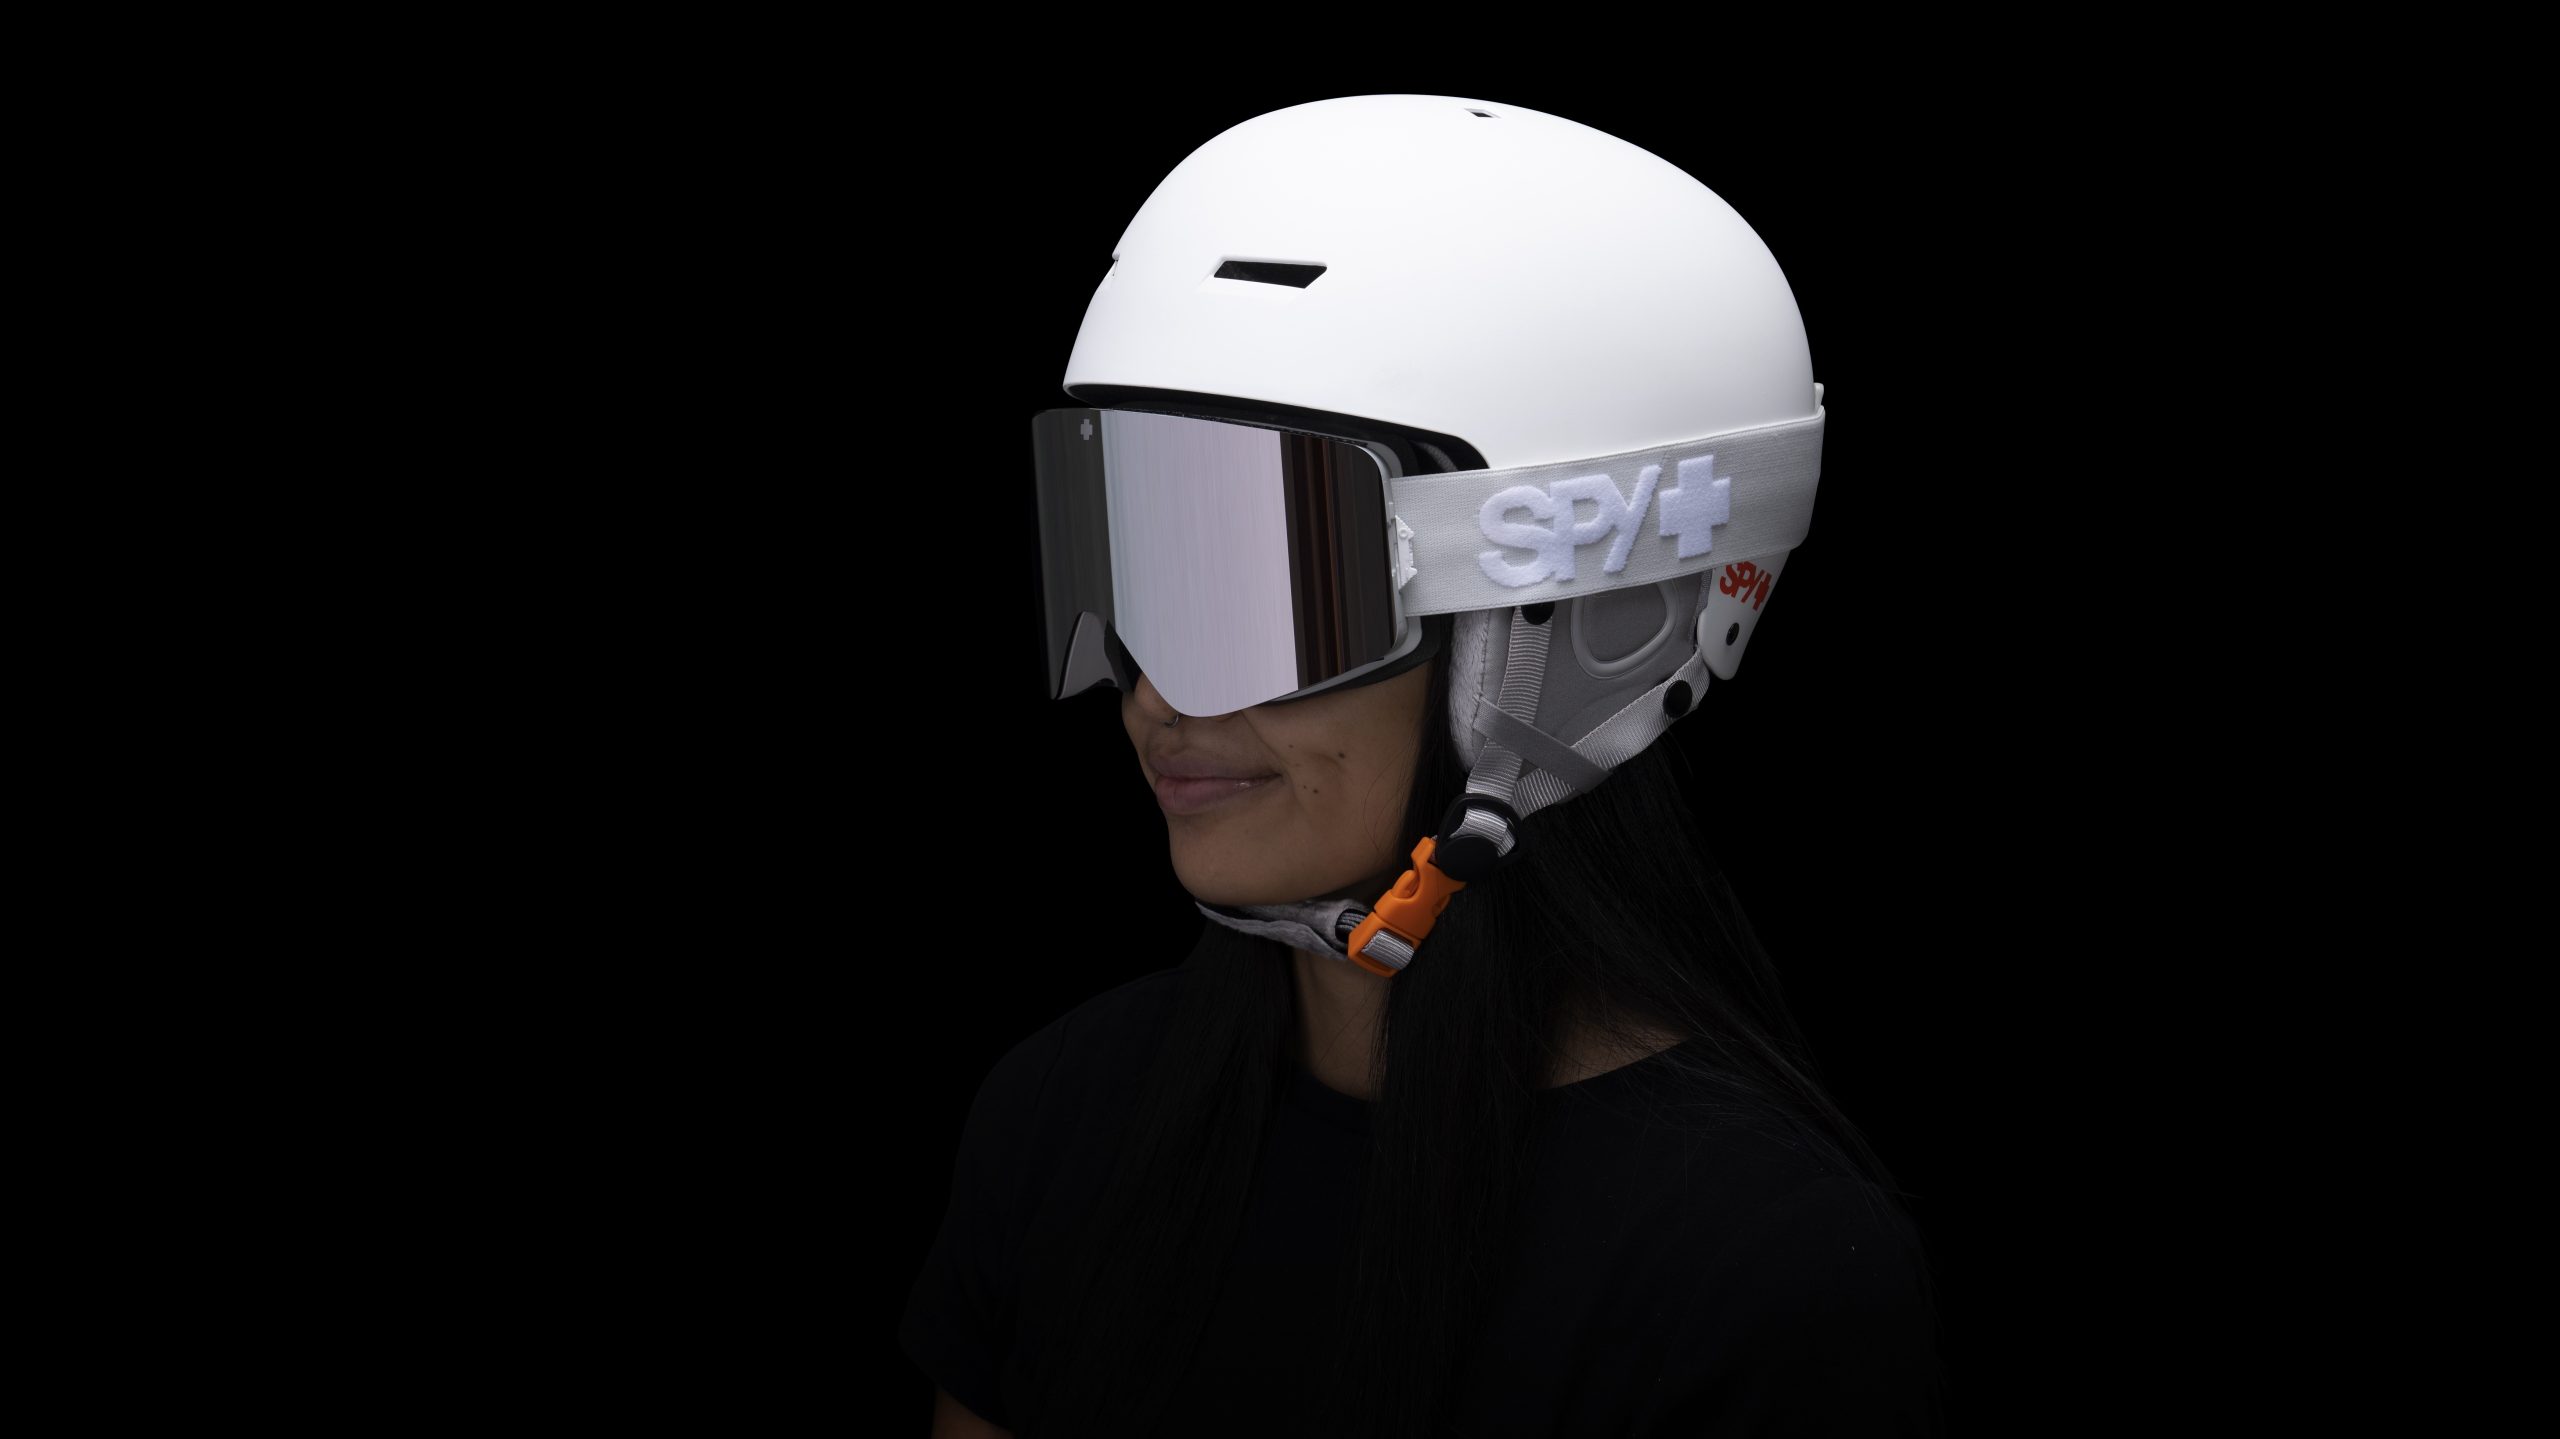 Spy+ FW22/23 Snow Helmets Preview